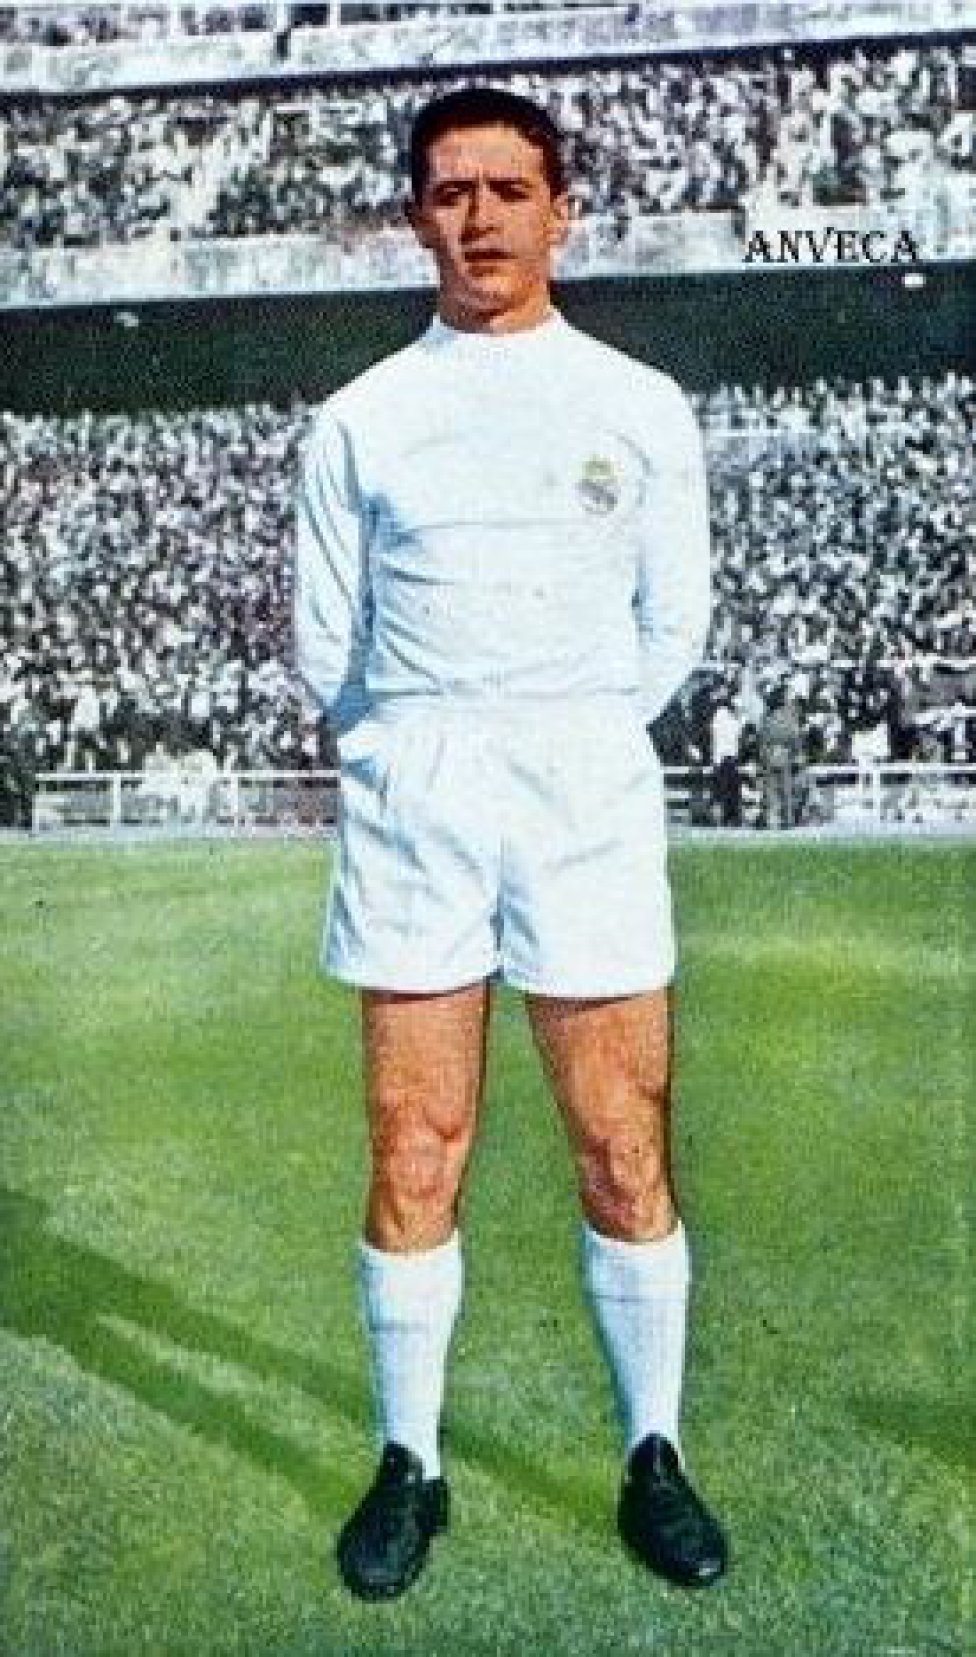 El madrileño estuvo entre 1959 y 1963 en el Real Madrid. En 1963 fichó por el Levante y jugó allí hasta 1965.